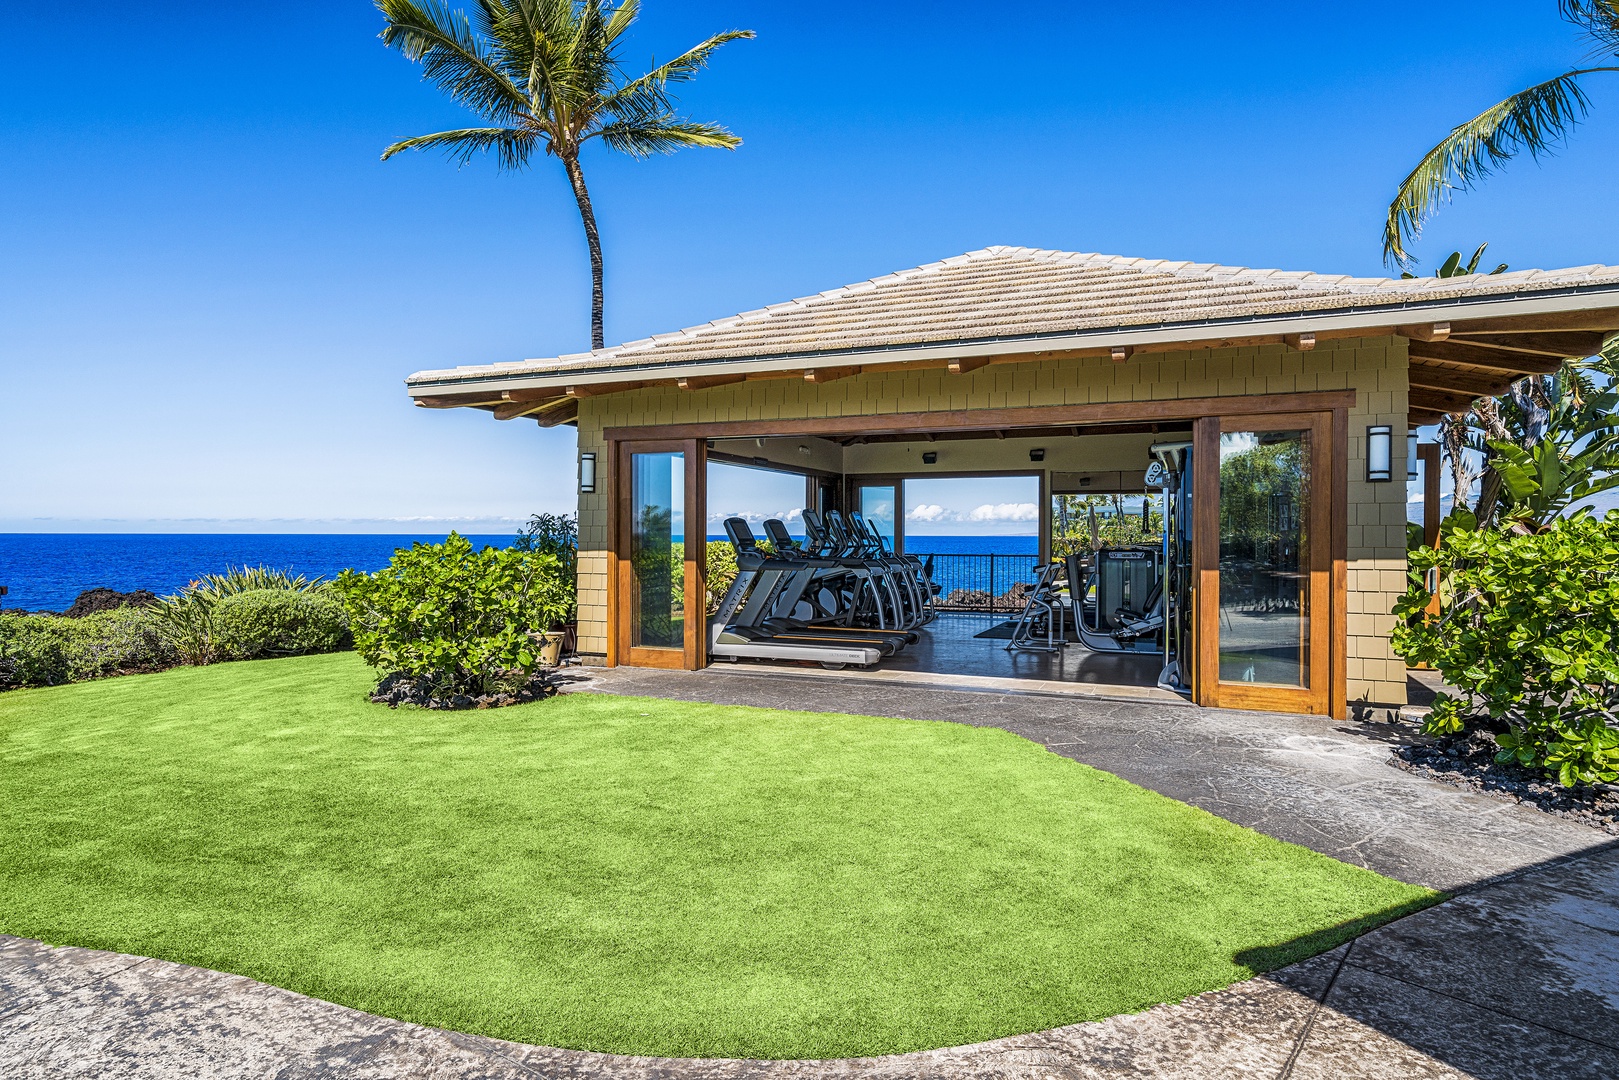 Waikoloa Vacation Rentals, Hali'i Kai at Waikoloa Beach Resort 9F - Hali'i Kai fitness center, with a view!